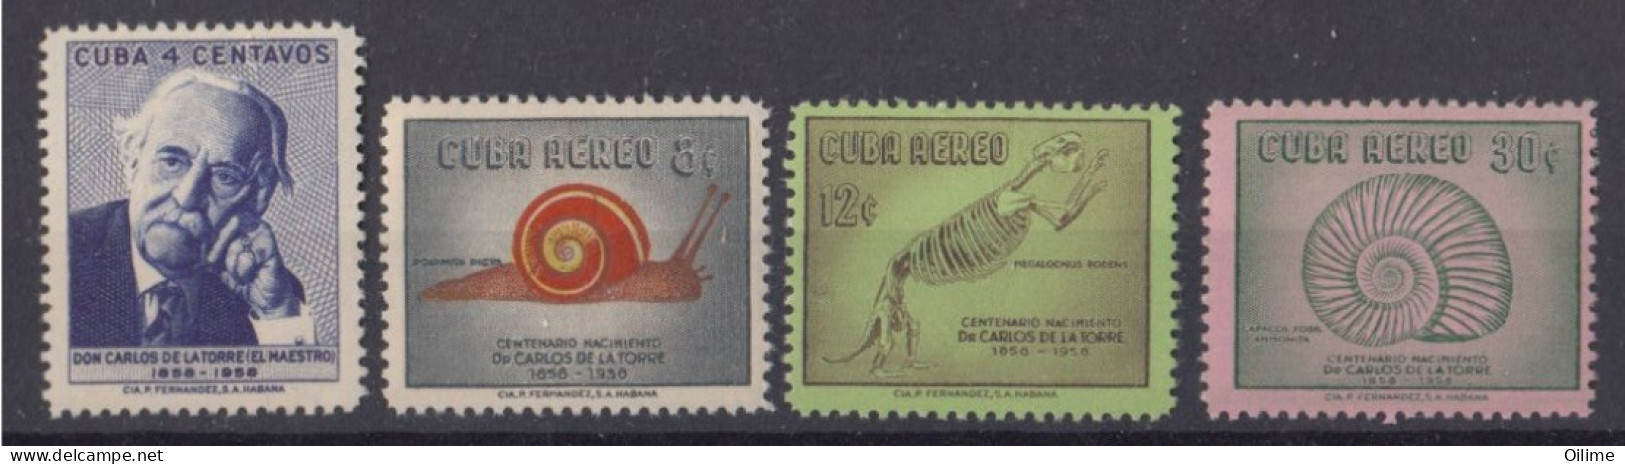 CUBA 1958. CENTENARIO DEL NACIMIENTO DE CARLOS DE LA TORRE. MNH. EDIFIL 758/61 - Nuevos